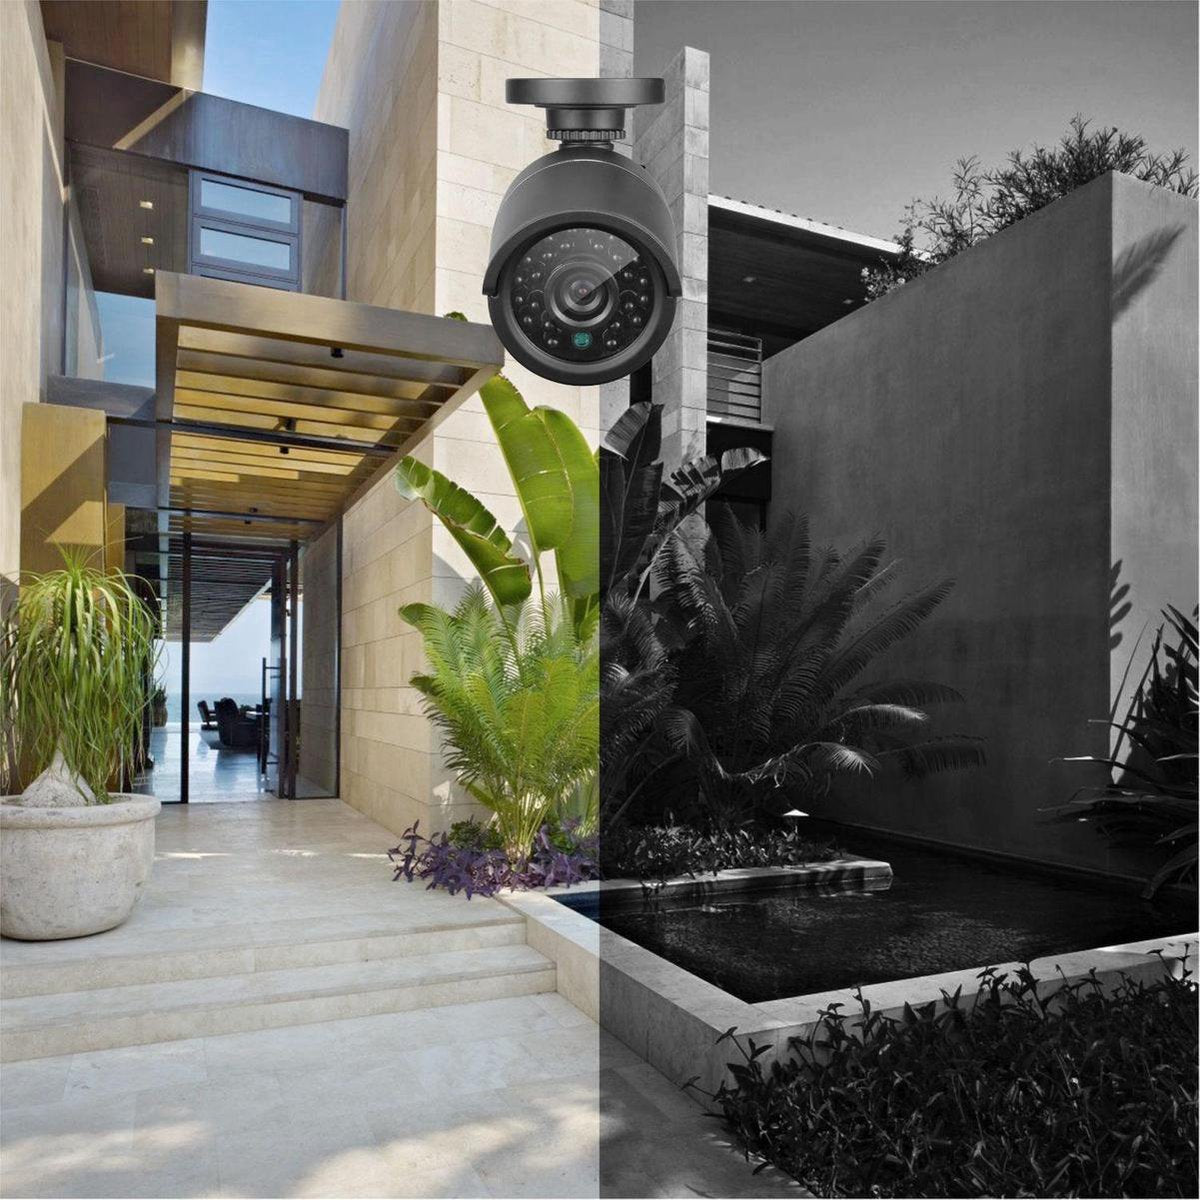 Ariko Sannce Camera CCTV systeem, 4x Zwarte hoge kwaliteit 3MP beveiliging camera's, Nachtzicht 25 mtr, Online opgenomen en live beelden bekijken, inclusief 1TB harde schijf - Nederlandstalige helpdesk